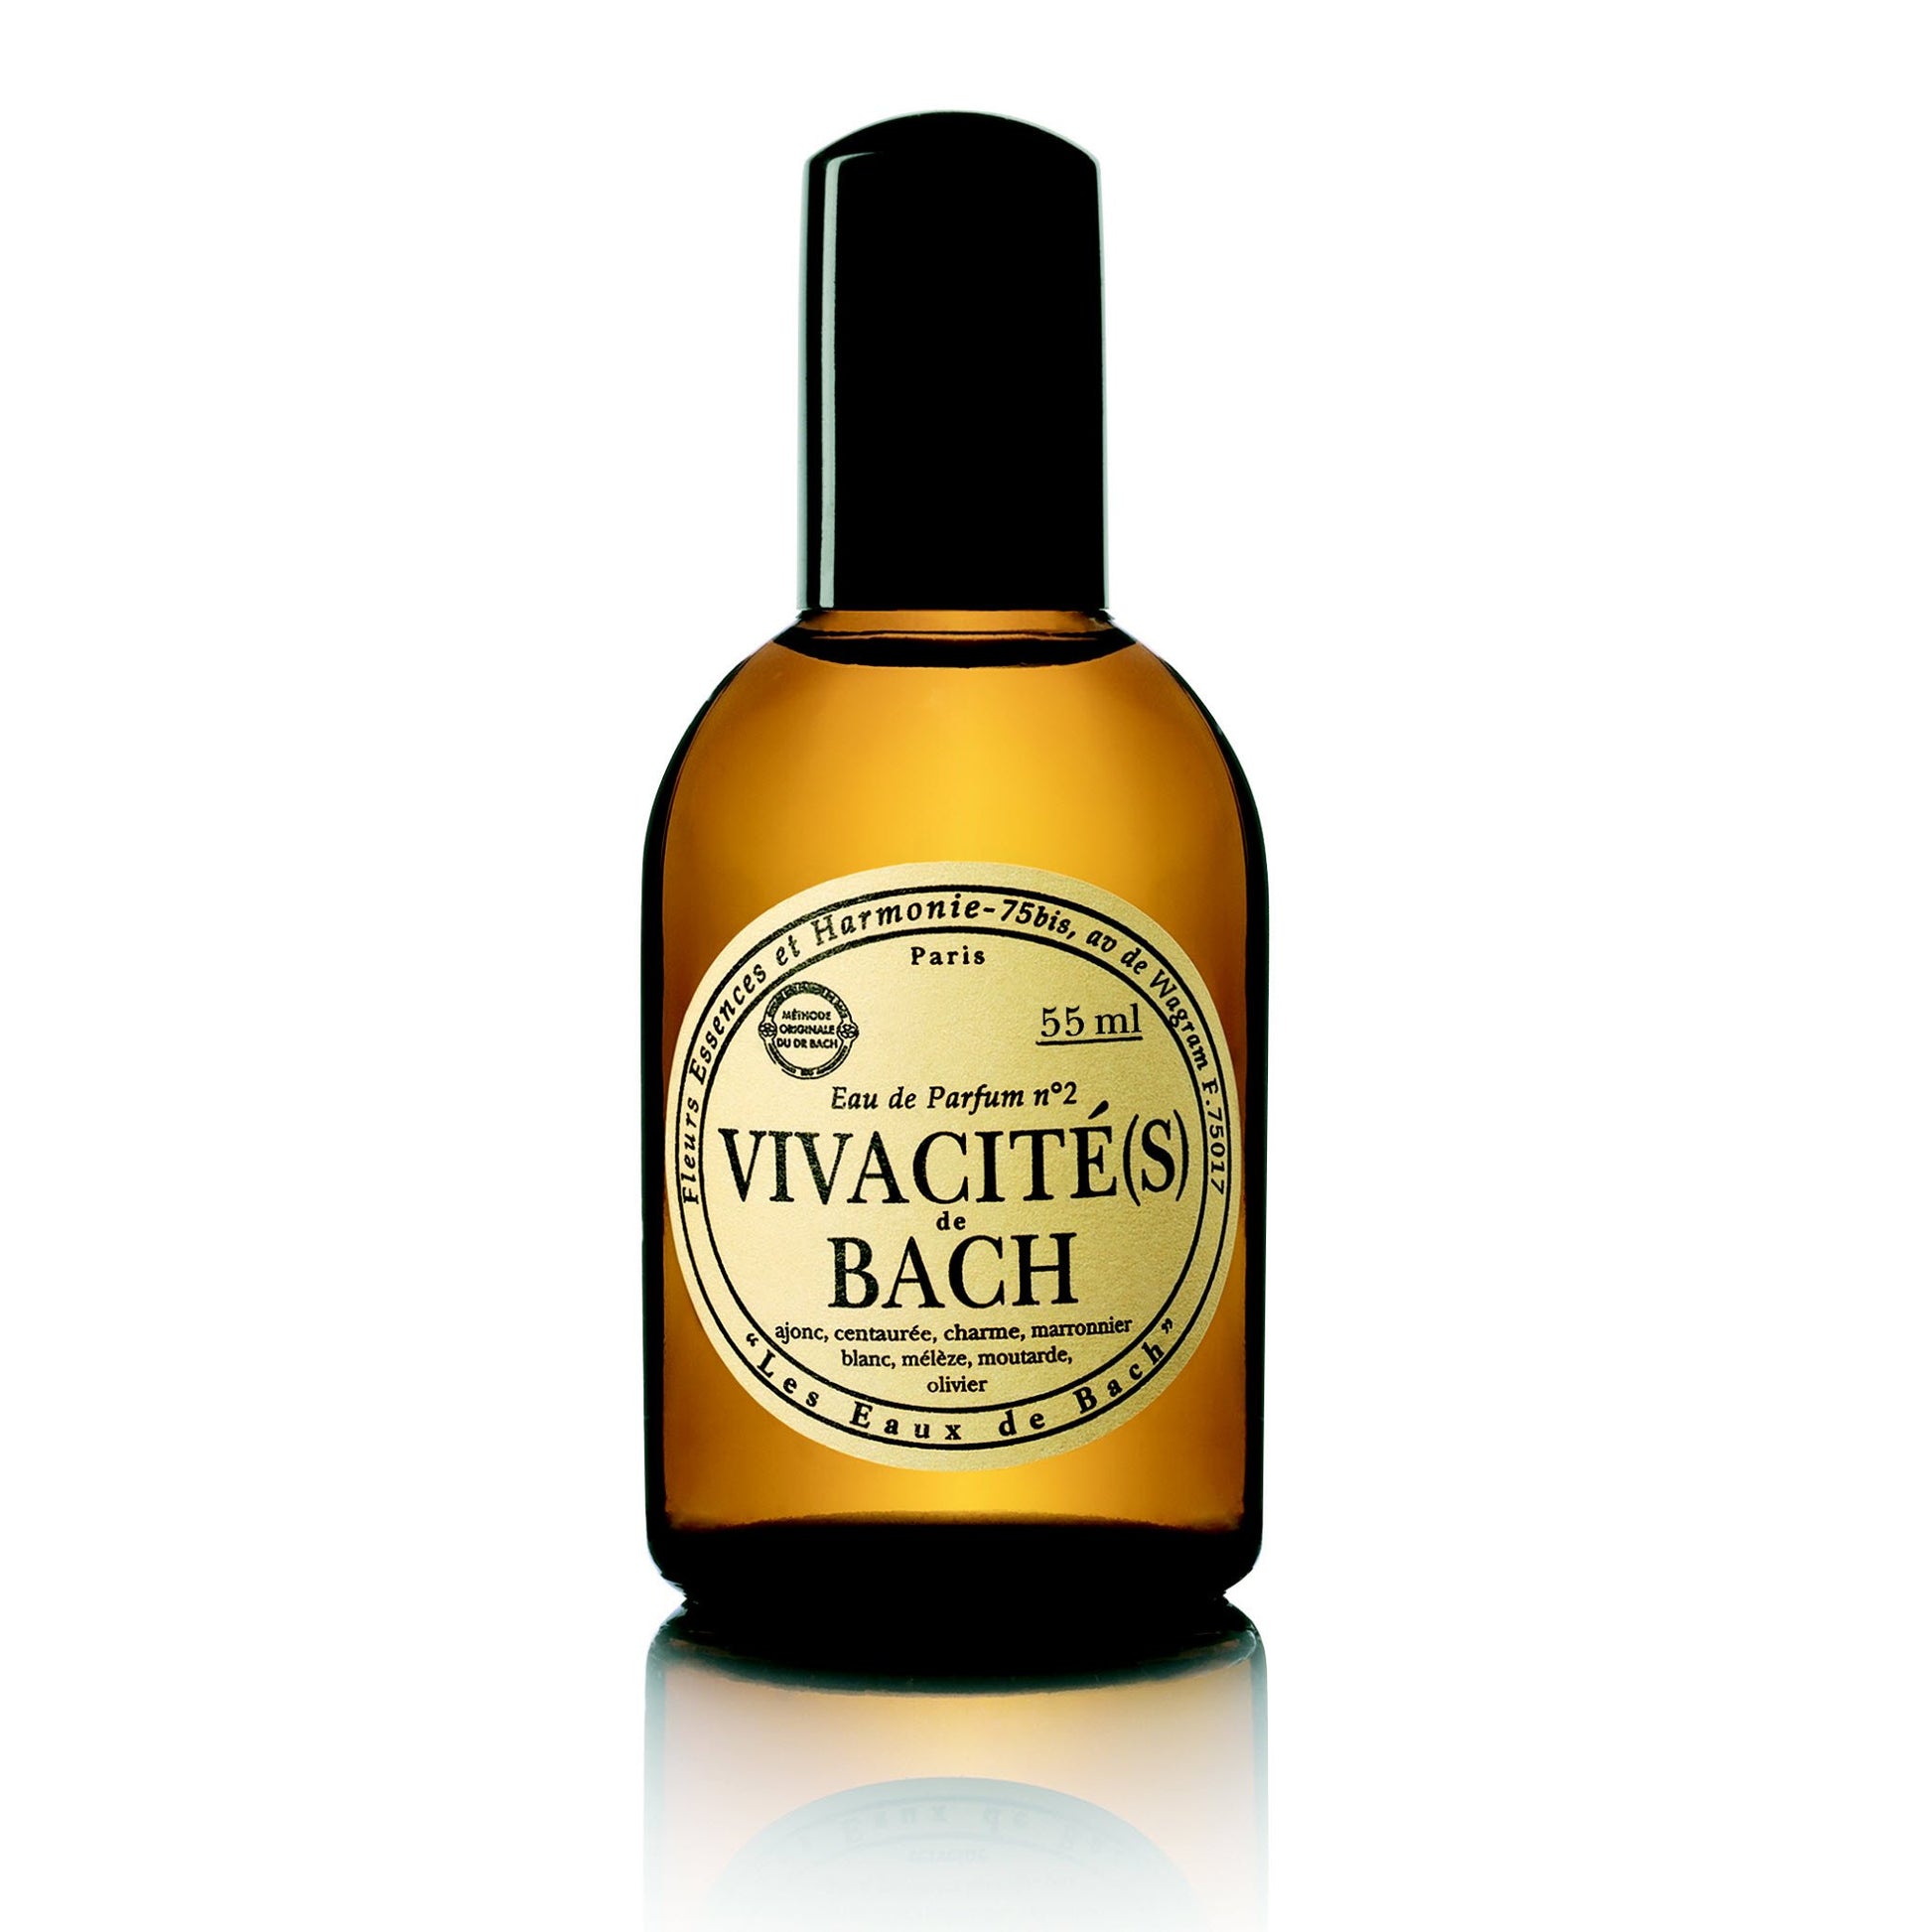 LES FLEURS DE BACH - Parfum Vivacite(s) de Bach - 55 ml